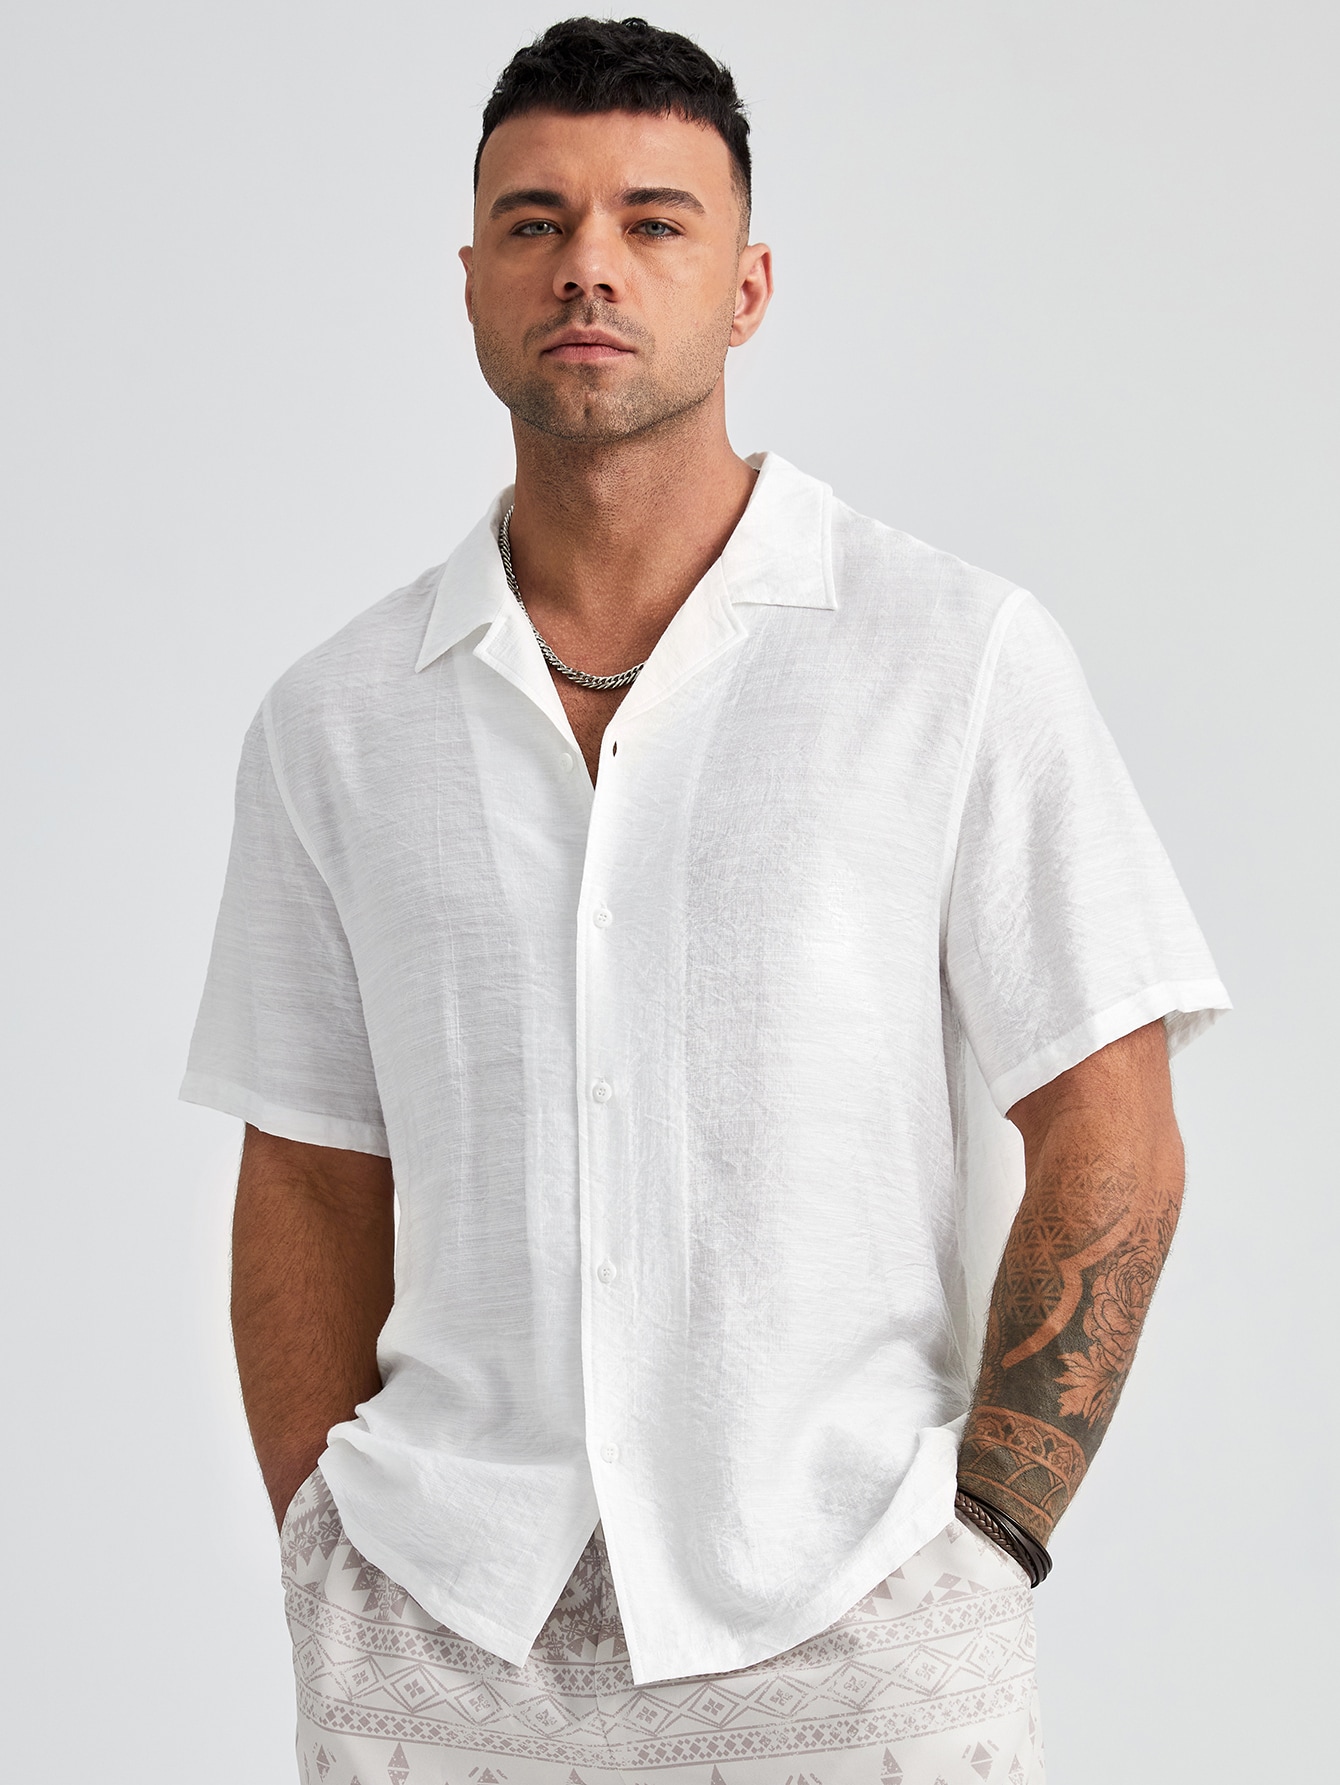 цена Manfinity Homme Мужская однотонная тканая рубашка больших размеров с коротким рукавом больших размеров, белый